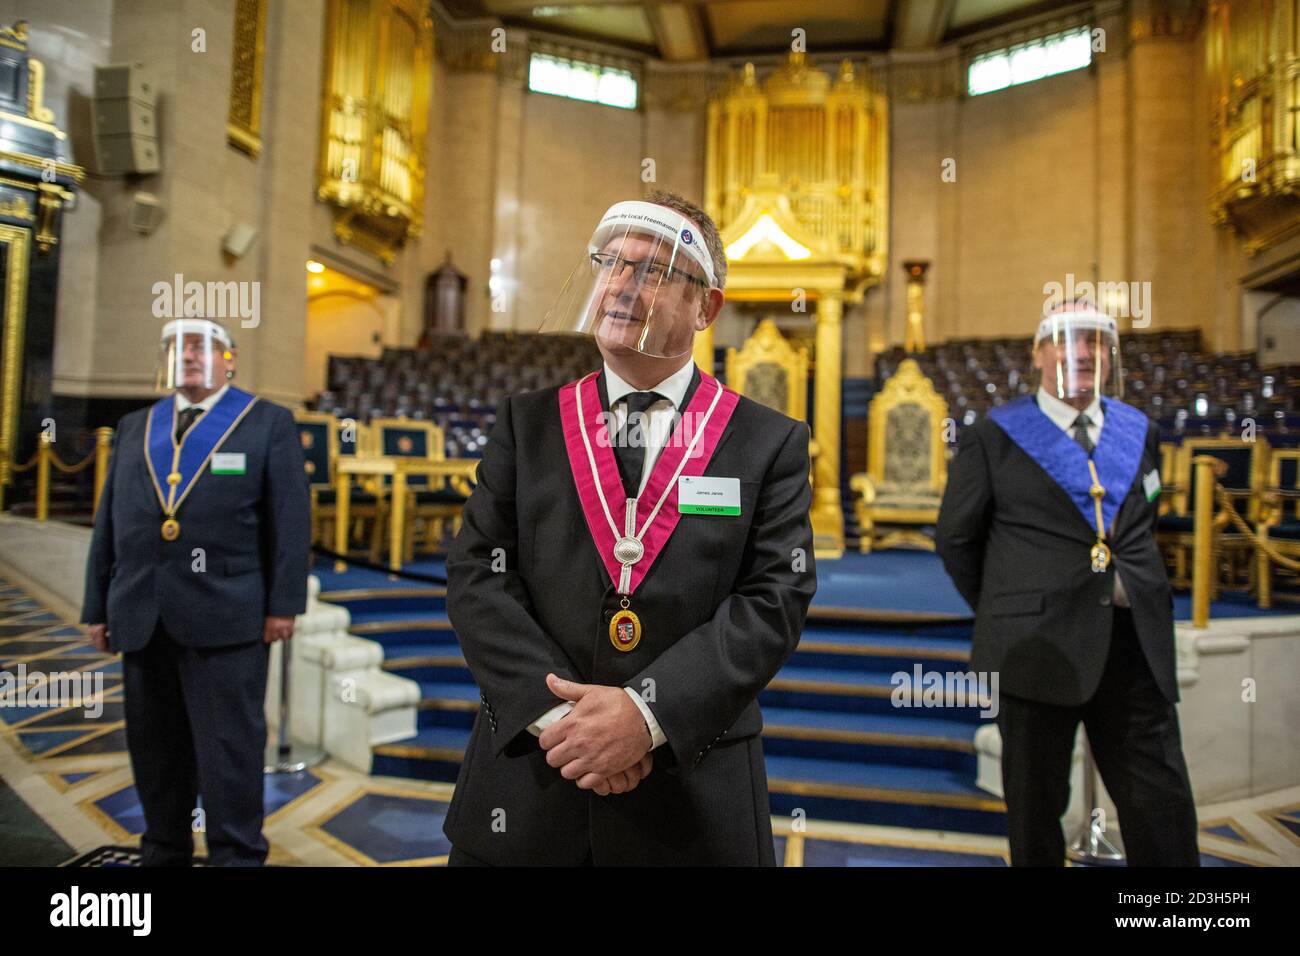 Freemasonss' Hall à Londres, siège de l'United Grand Lodge of England et lieu de rencontre pour les Masonic Lodges, Queen Street, Covent Garden. Banque D'Images